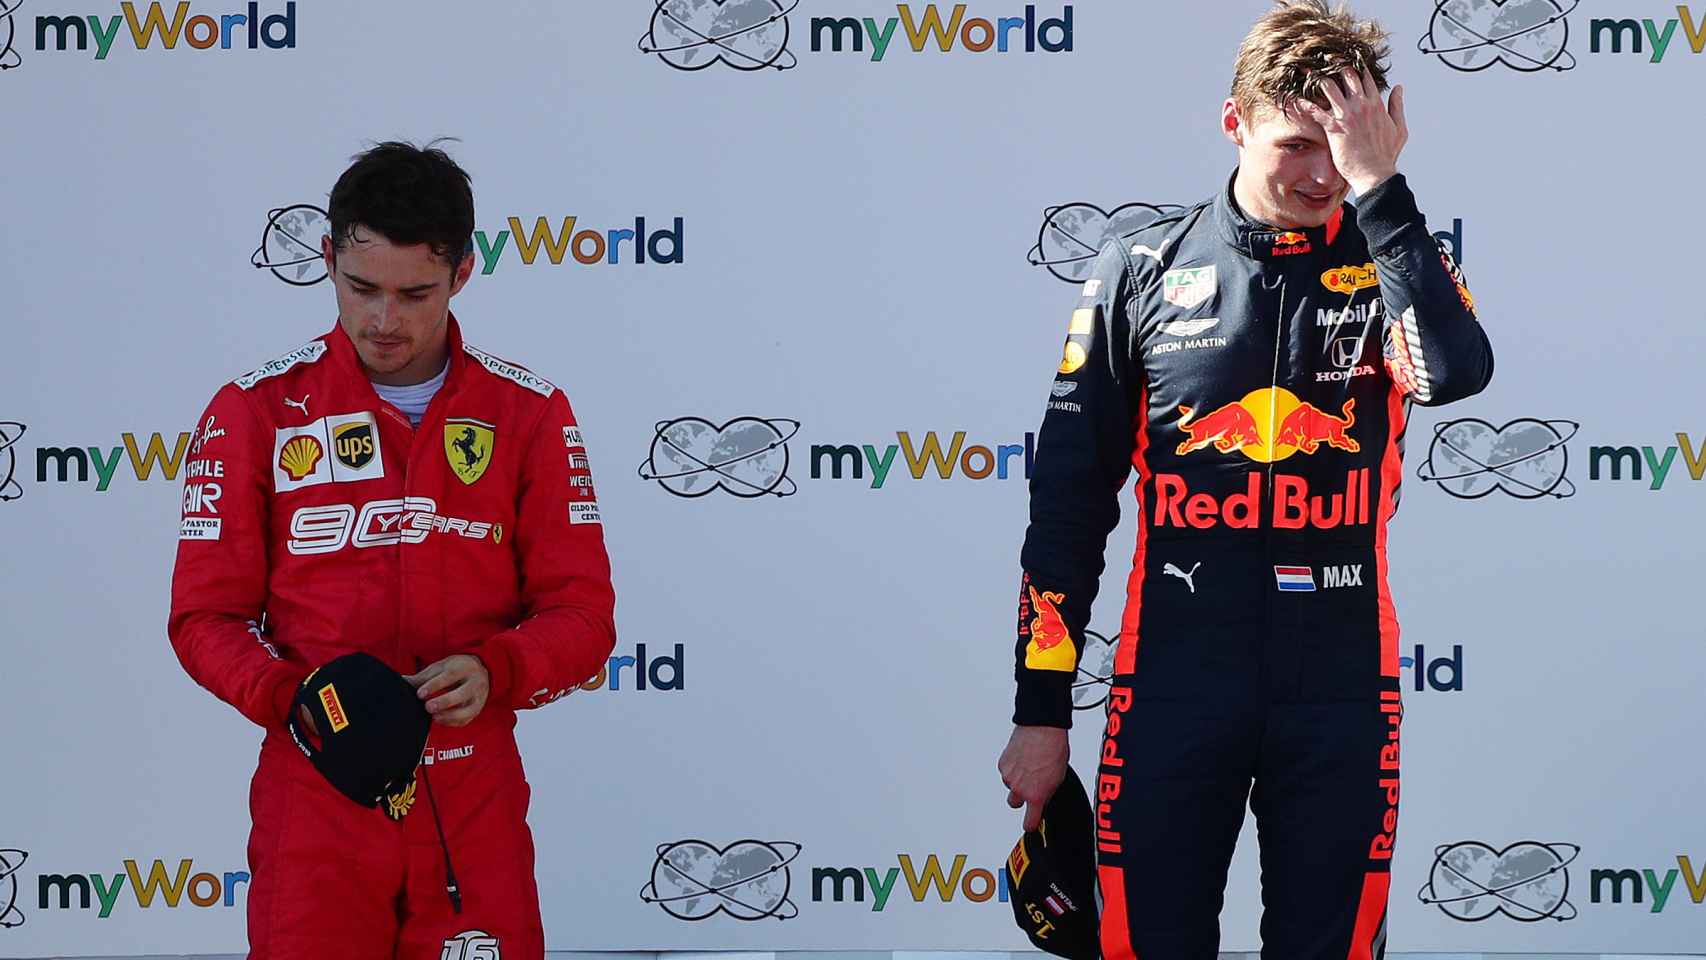 Leclerc y Verstappen, tras acabar el GP de Austria